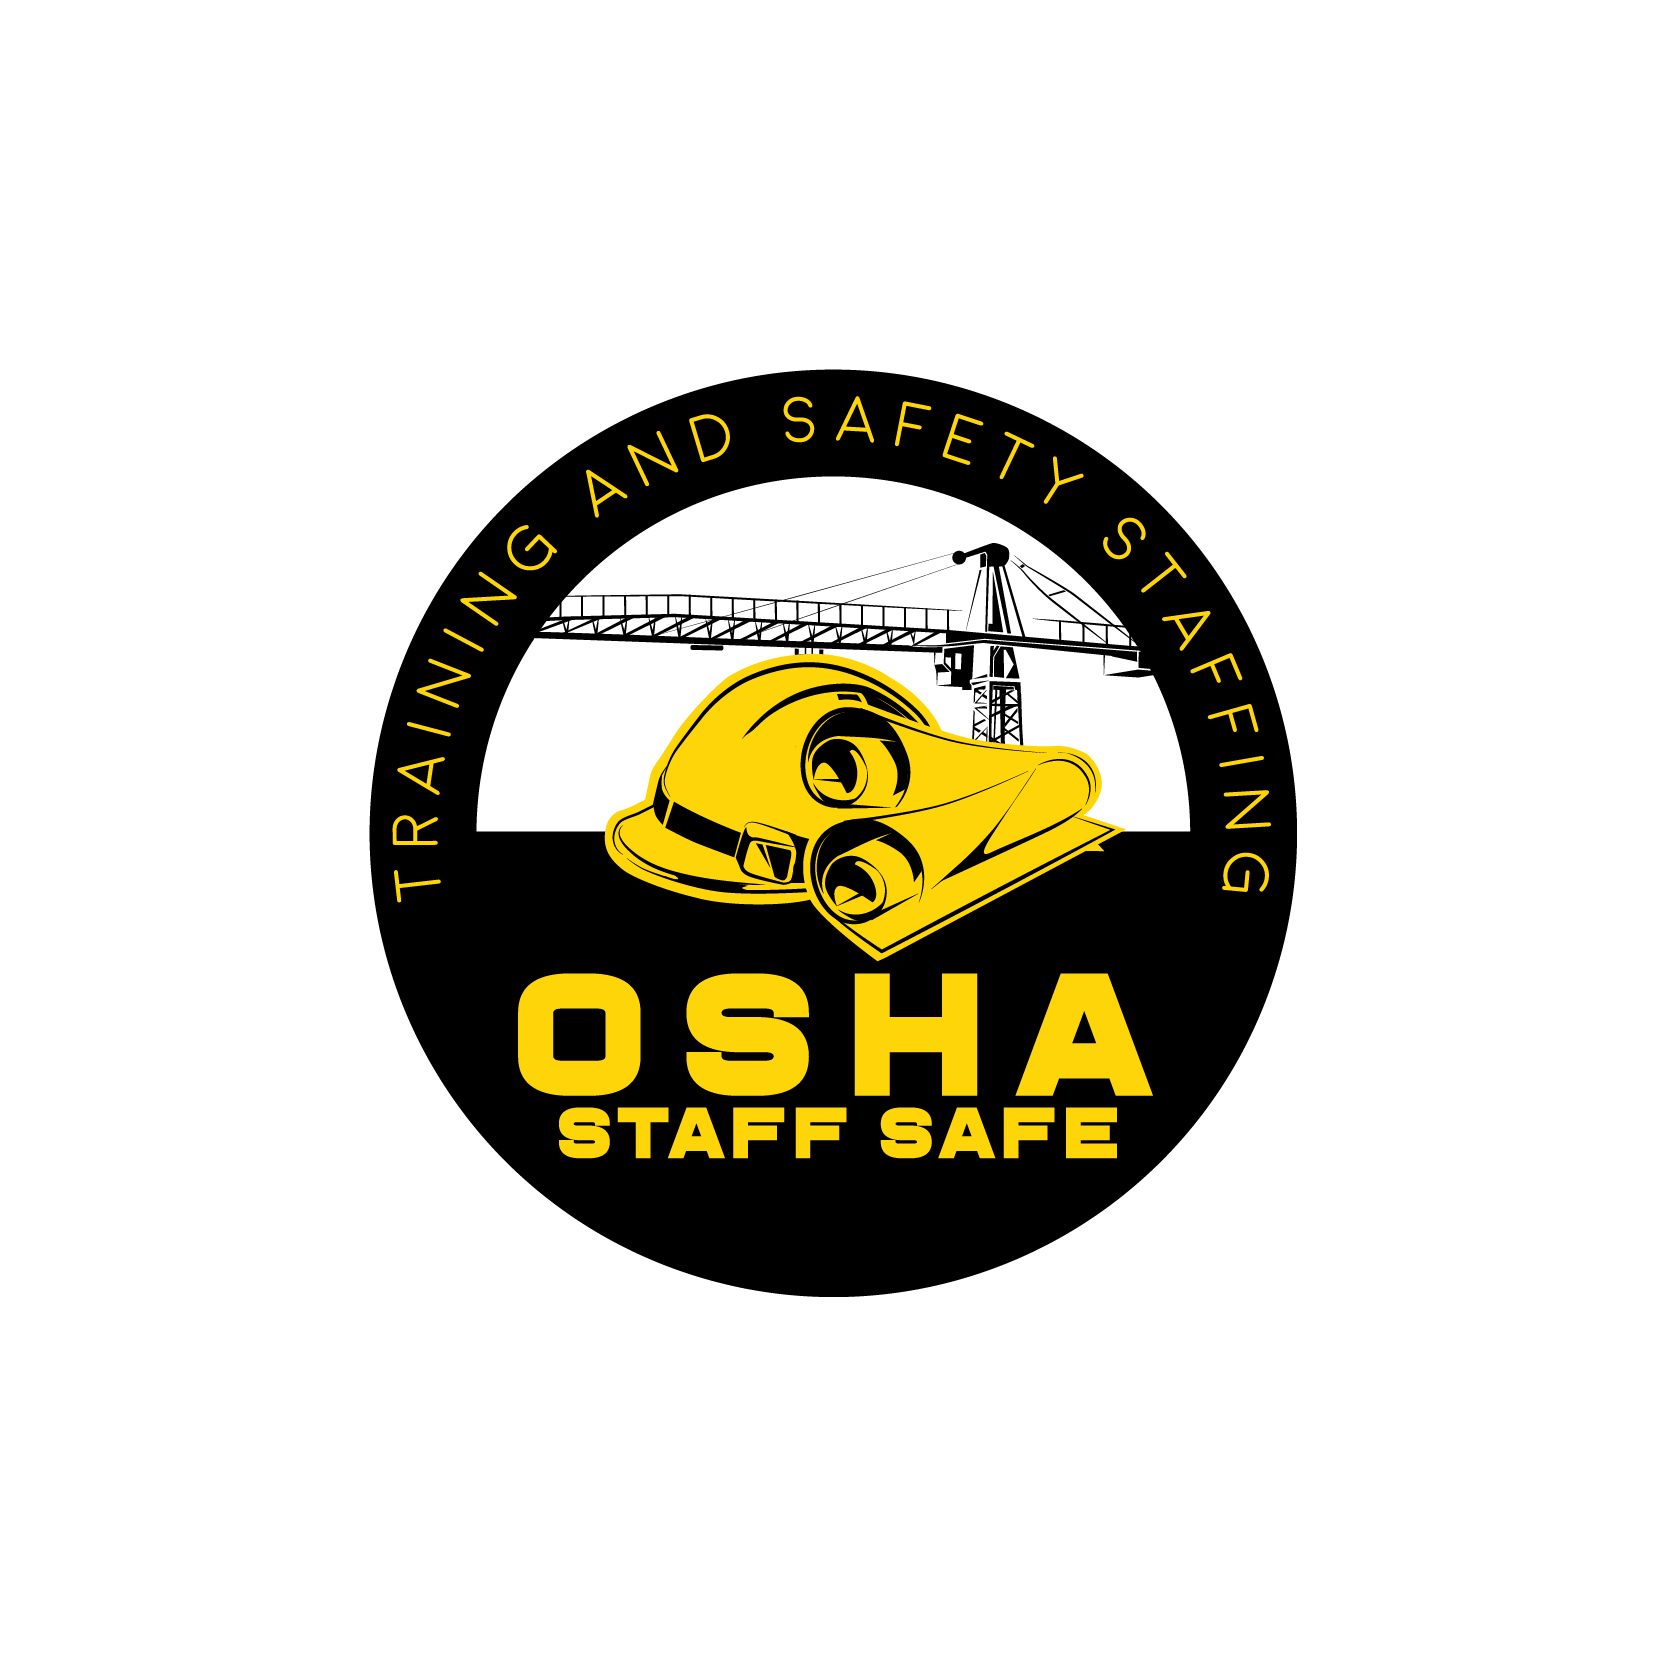 OSHA STAFF SAFE